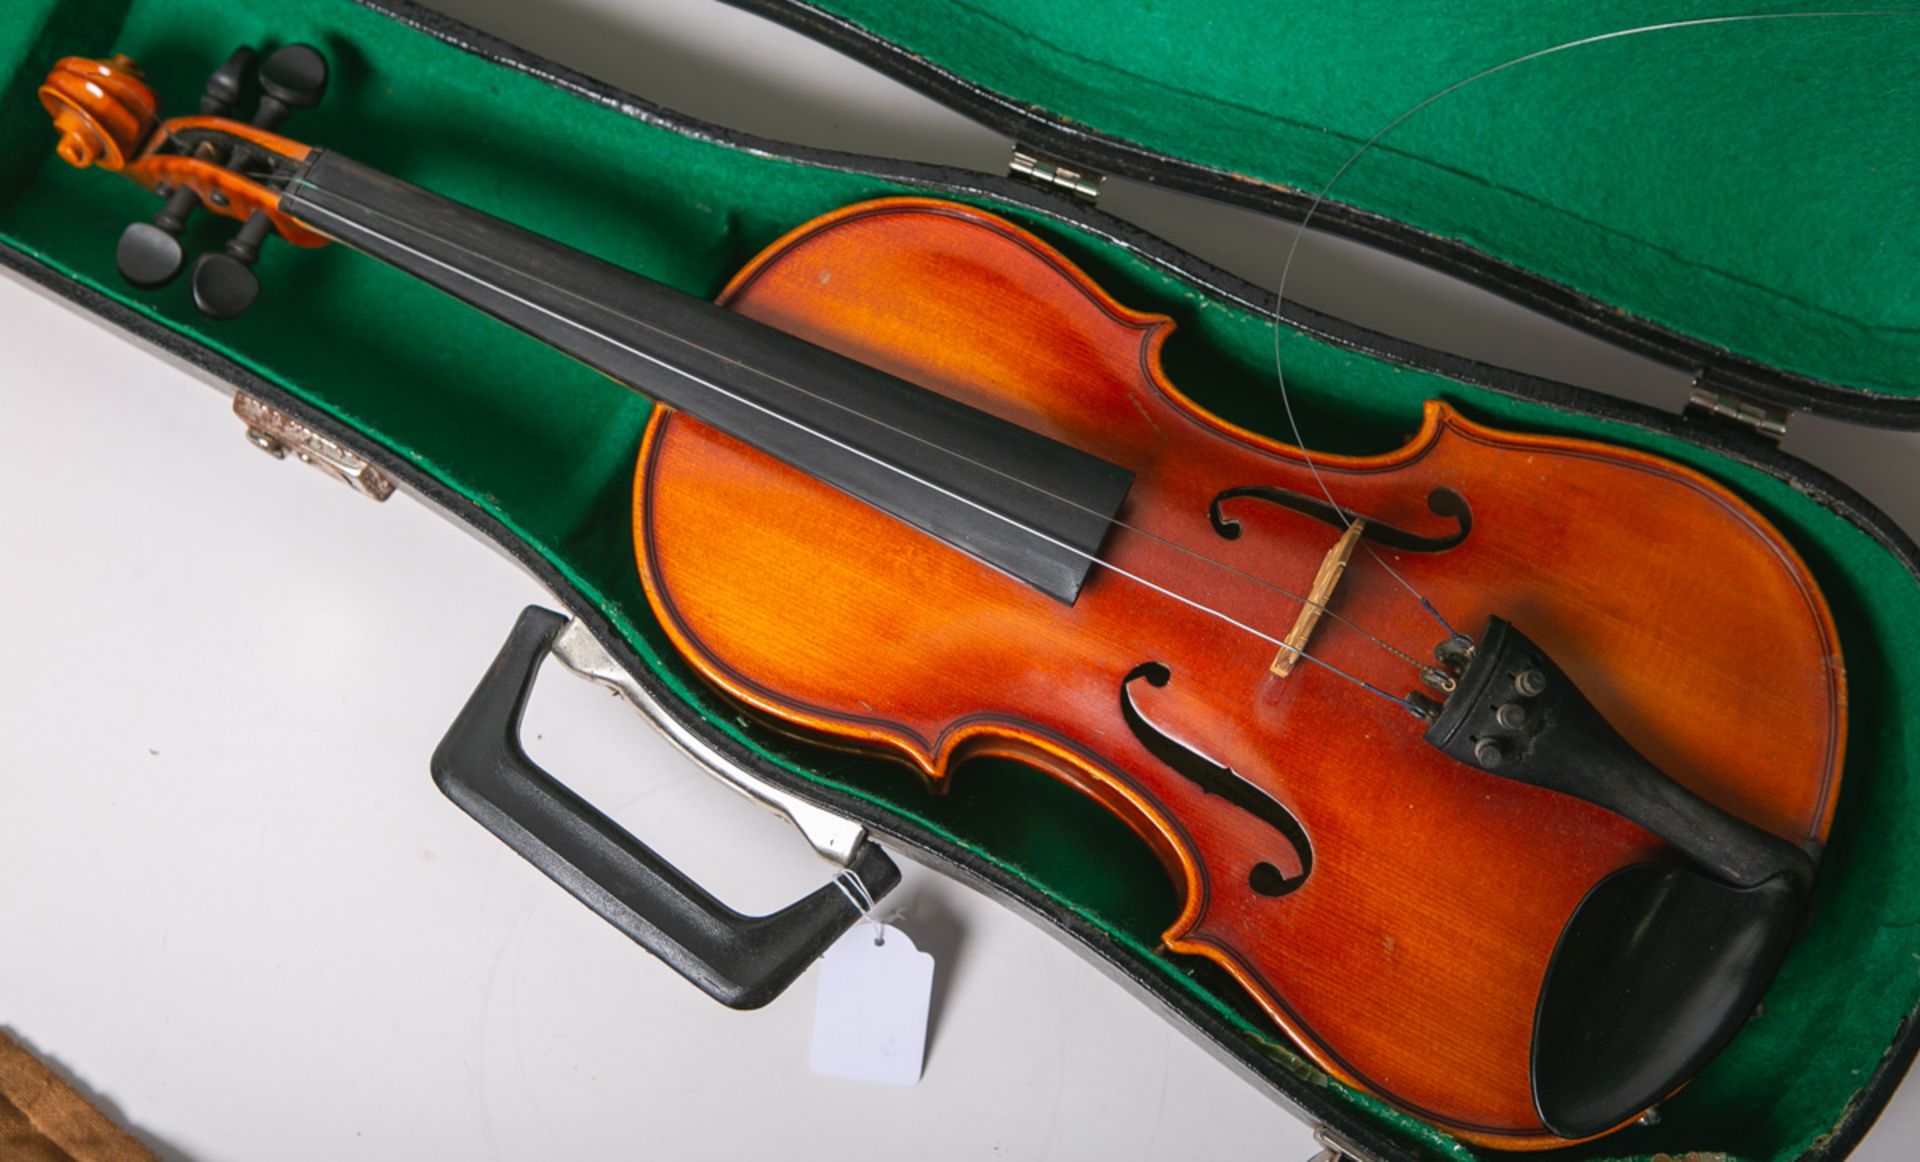 Violine (Gewa Maestro, Mittenwald Karwendel 1974) - Image 2 of 2